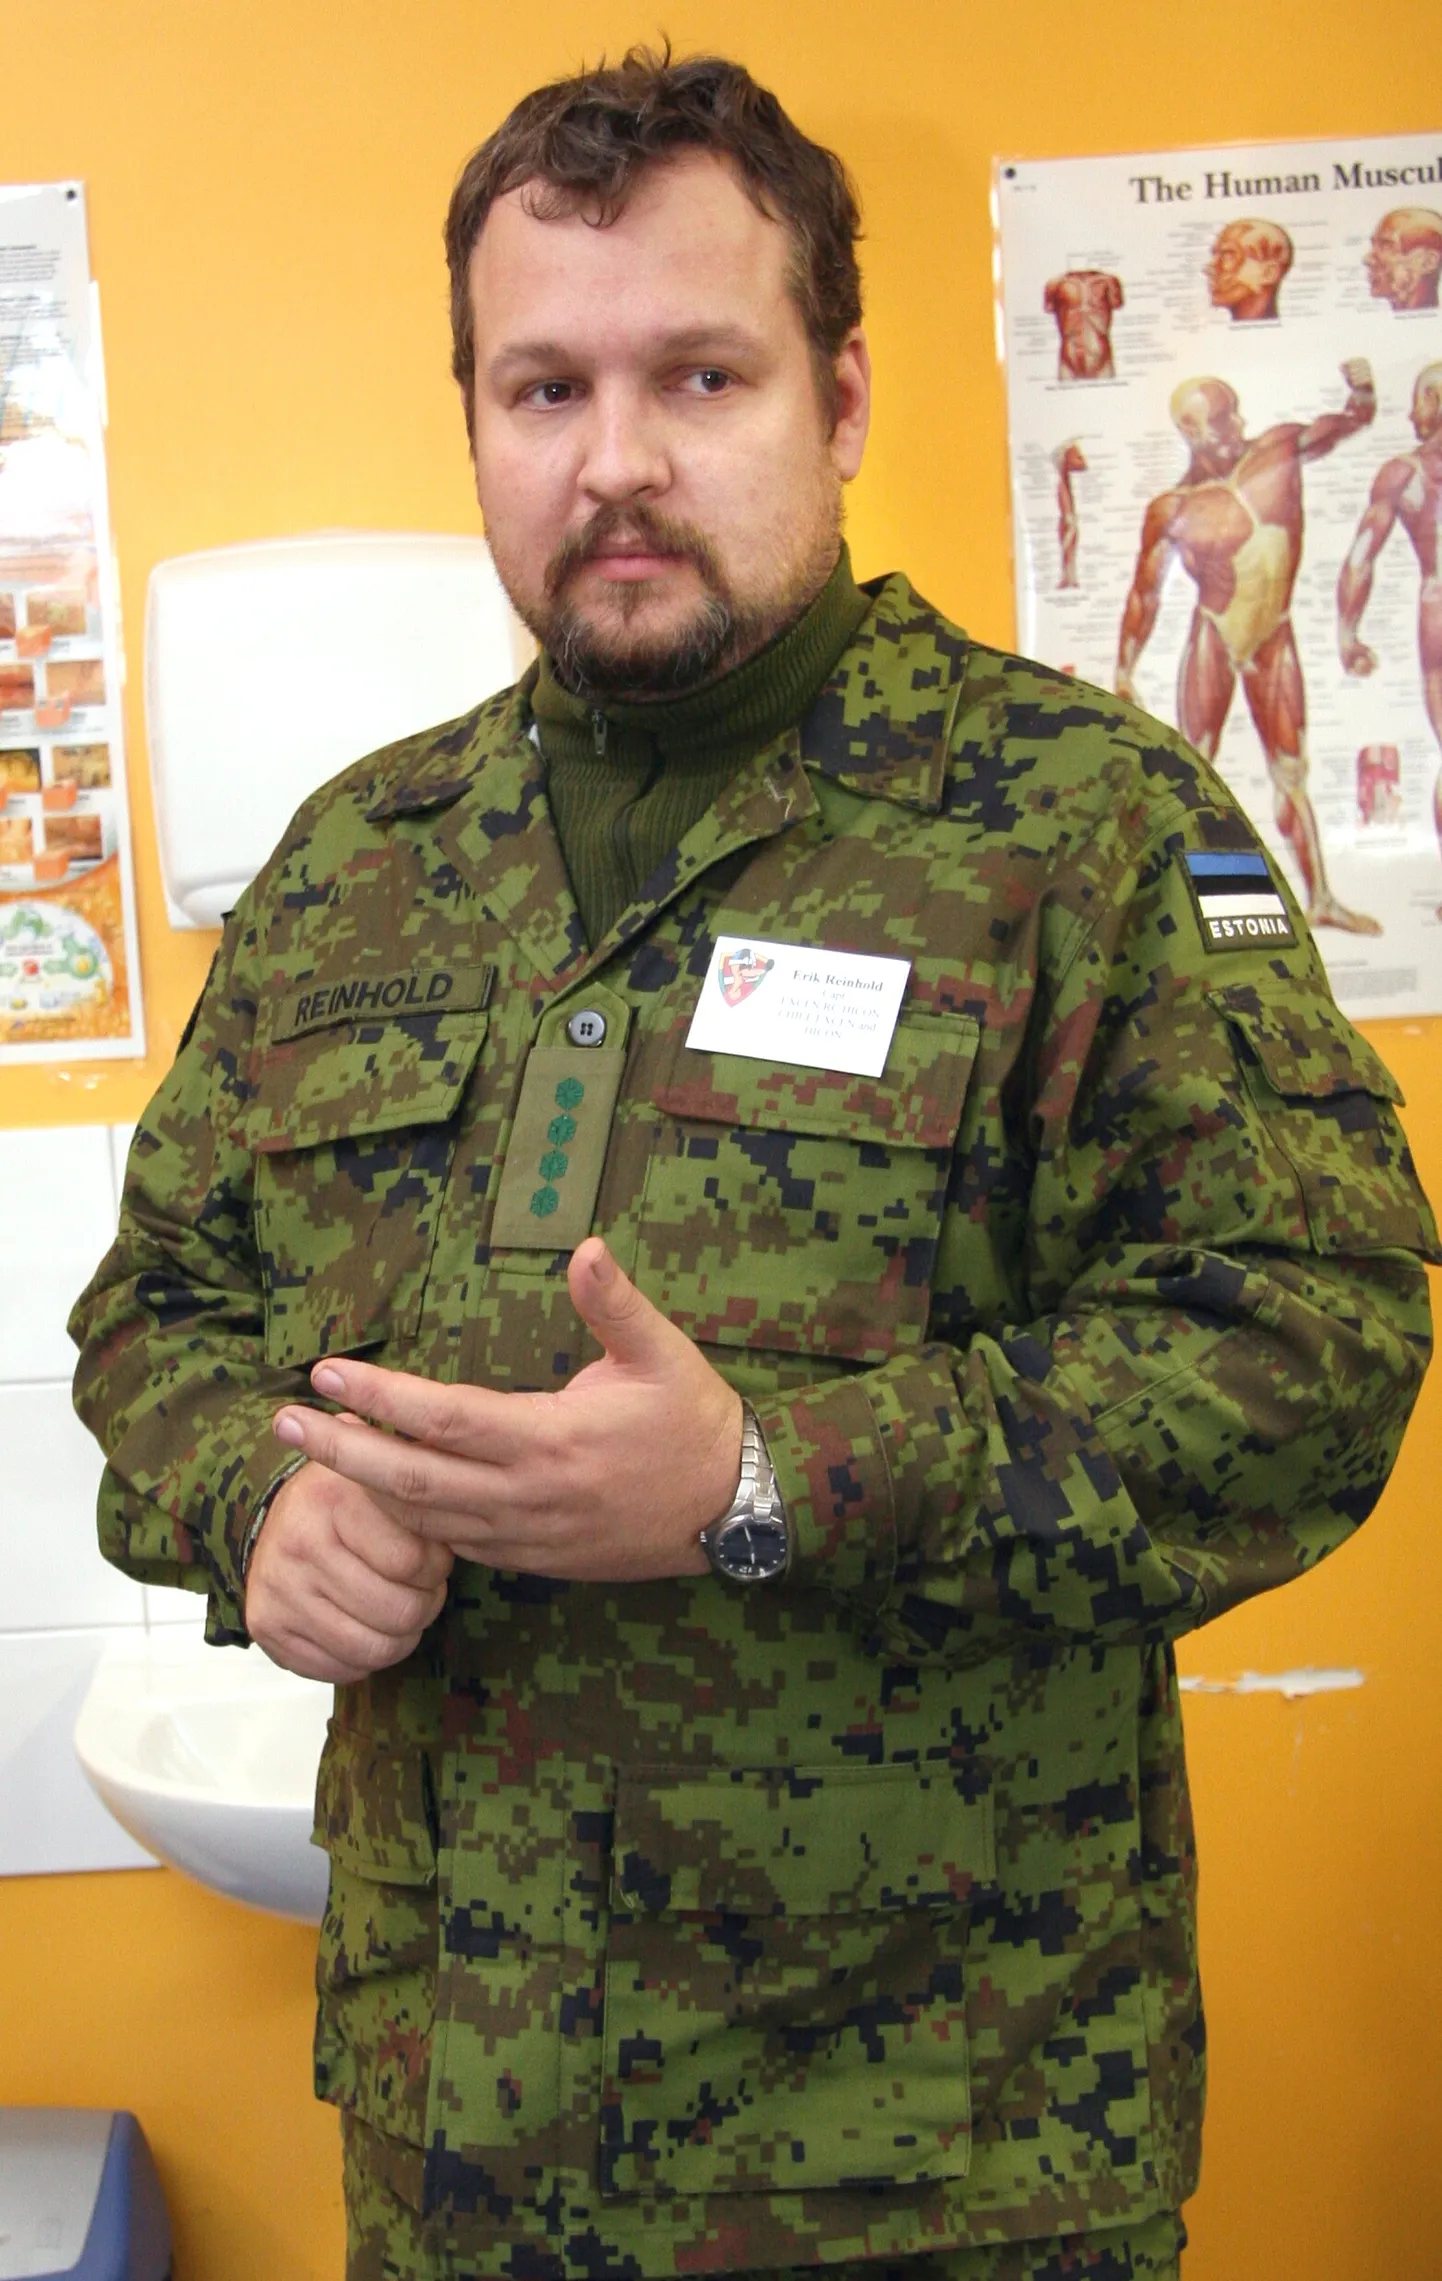 IRLi Suur-Pärnu osakonna juhatuse esimeheks sai Erik Reinhold. Arhiivifoto.